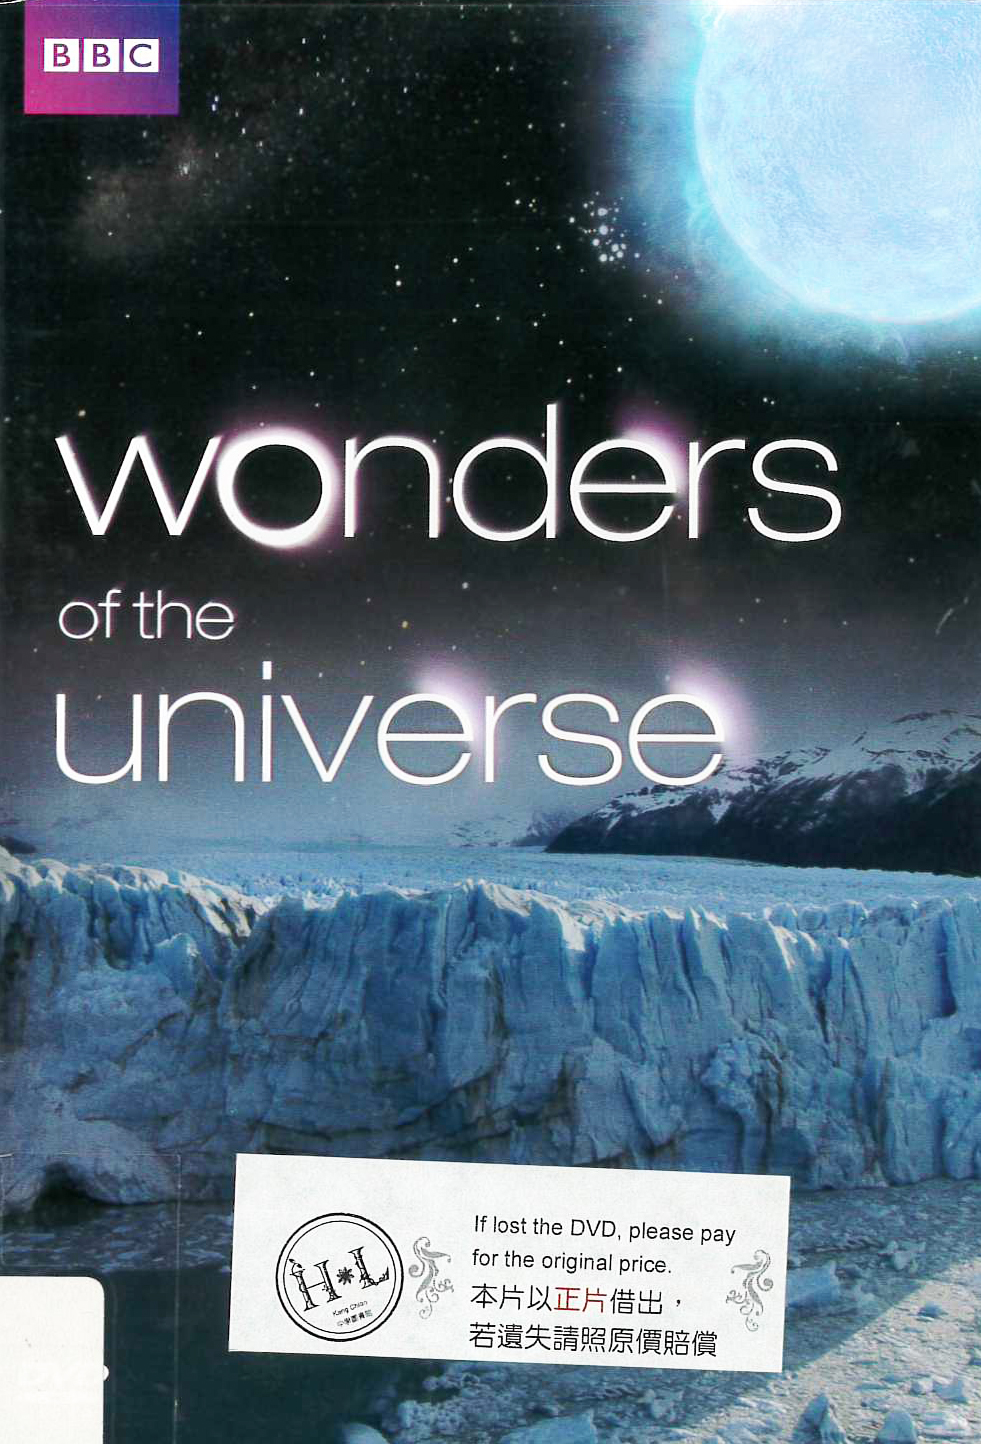 宇宙的奇蹟 : Wonders of the universe